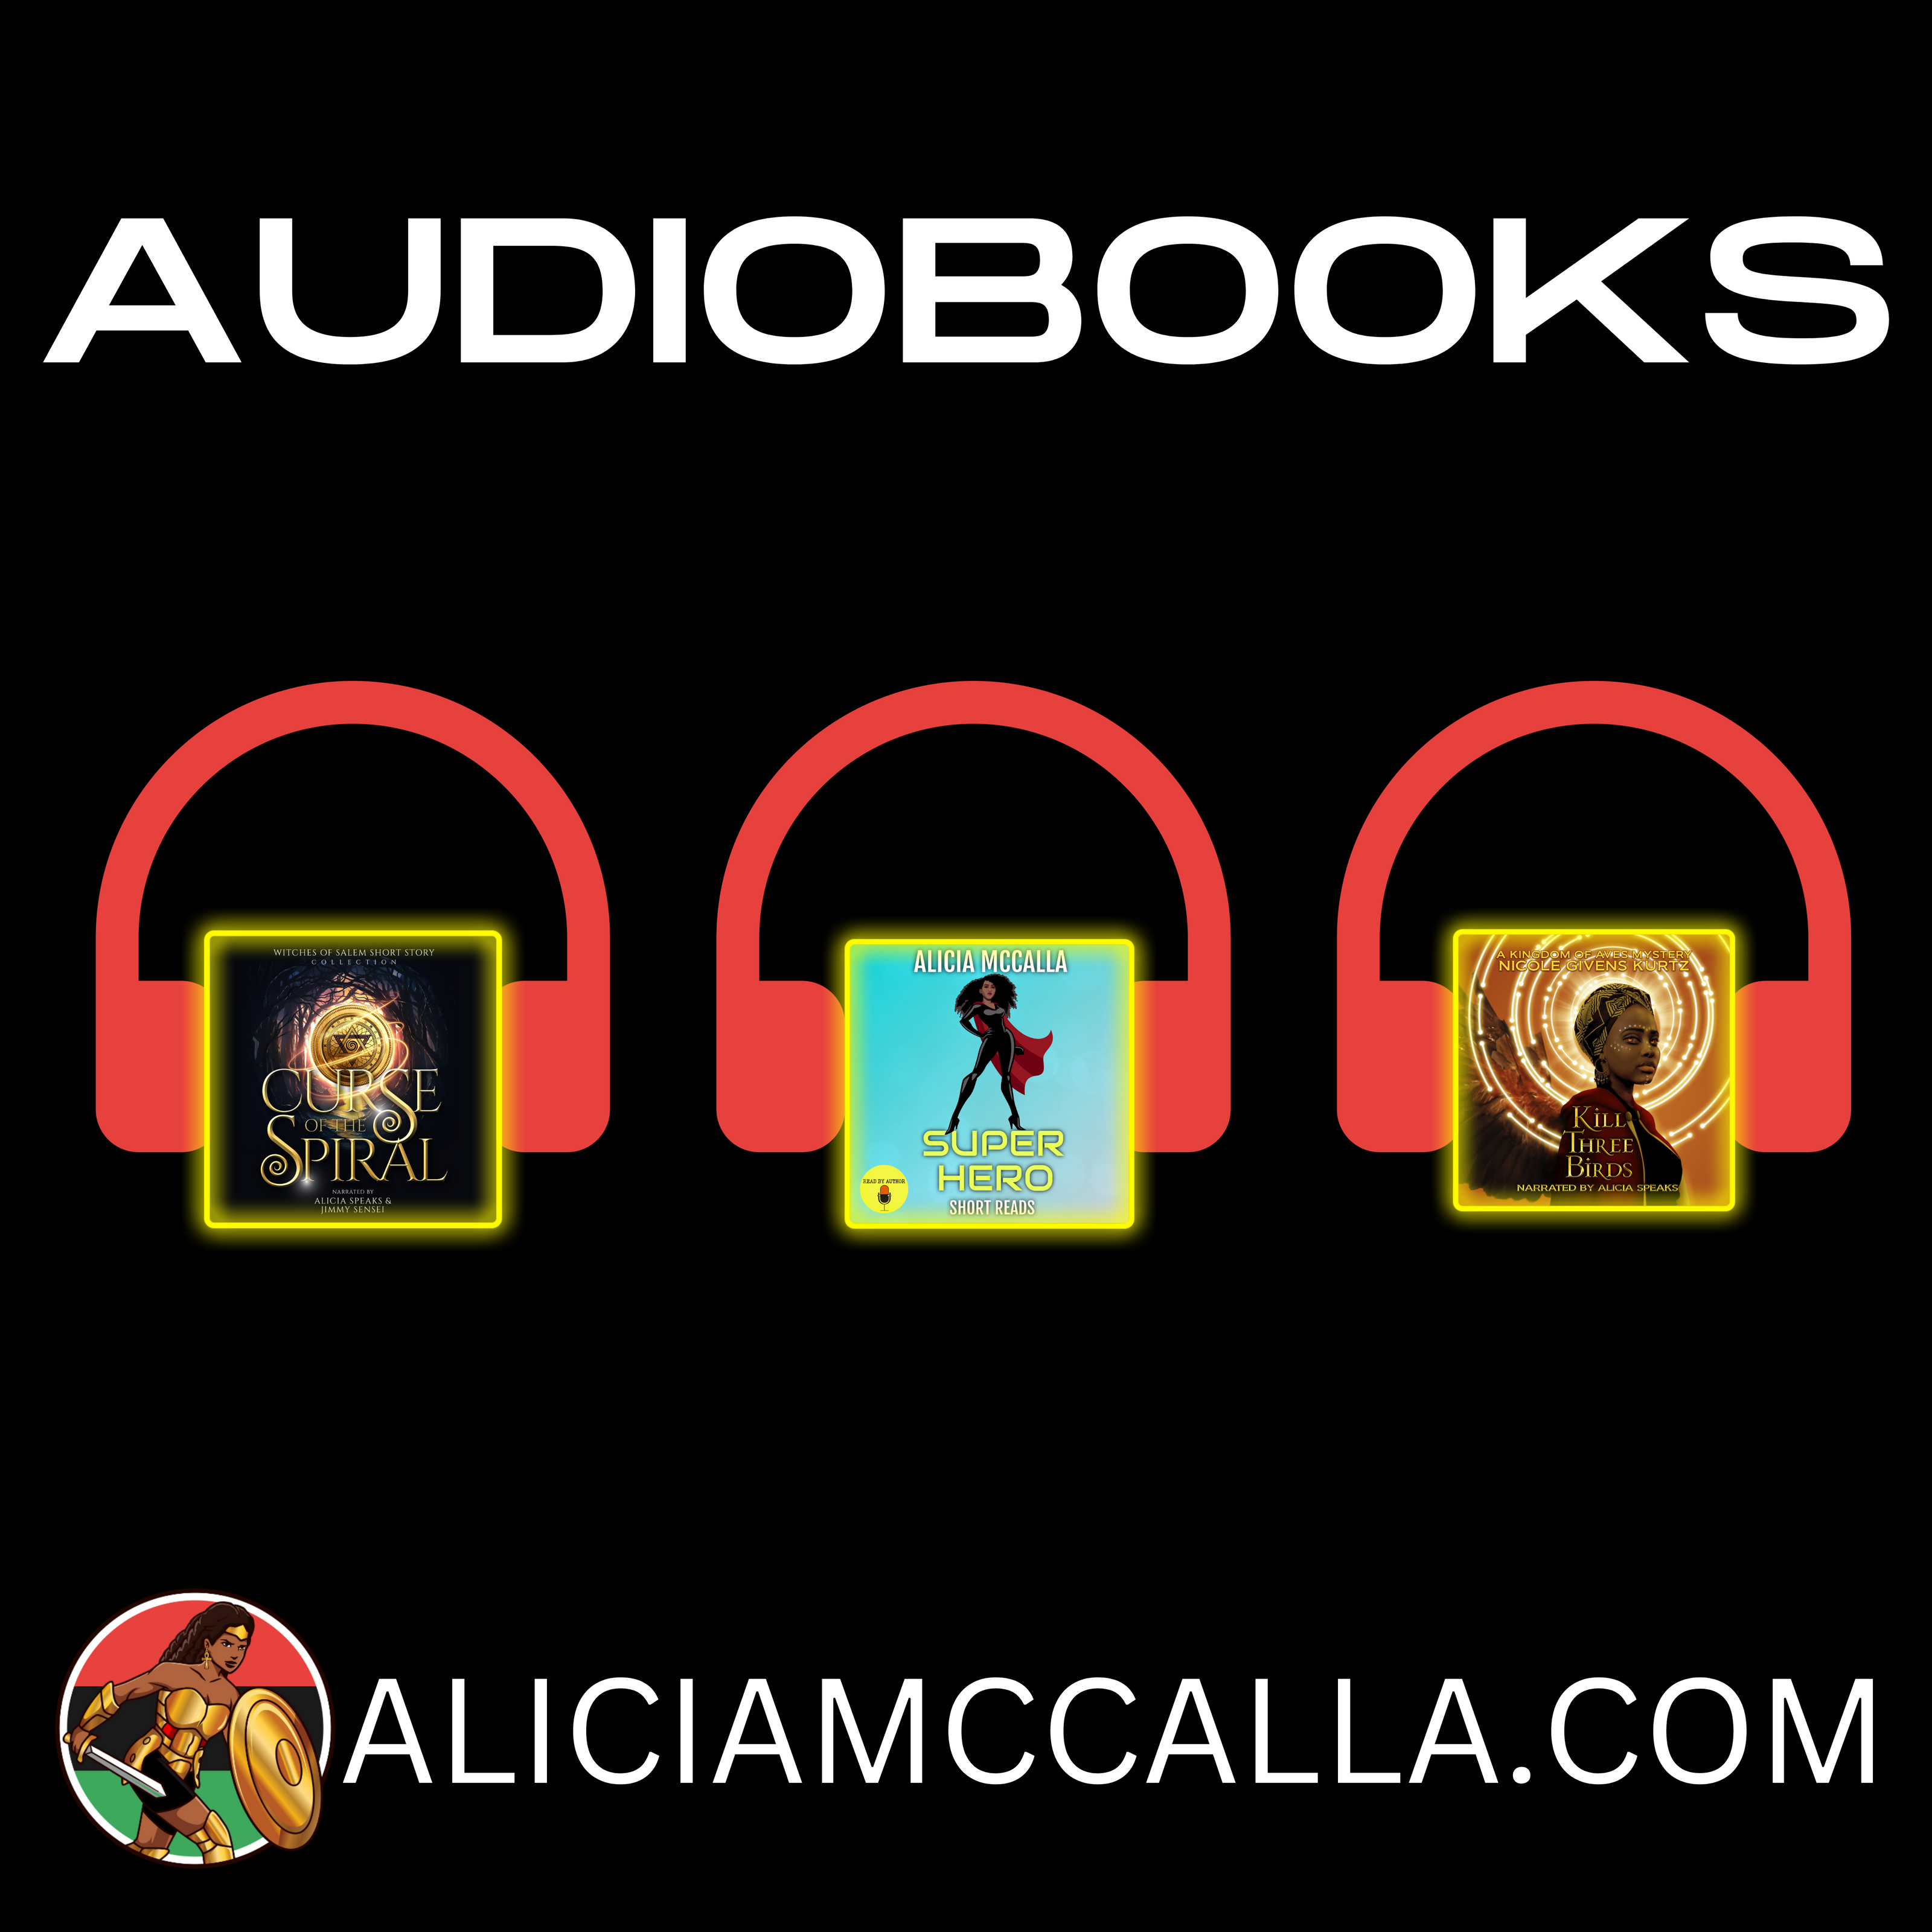 Audiobooks for Alicia McCalla's storefront